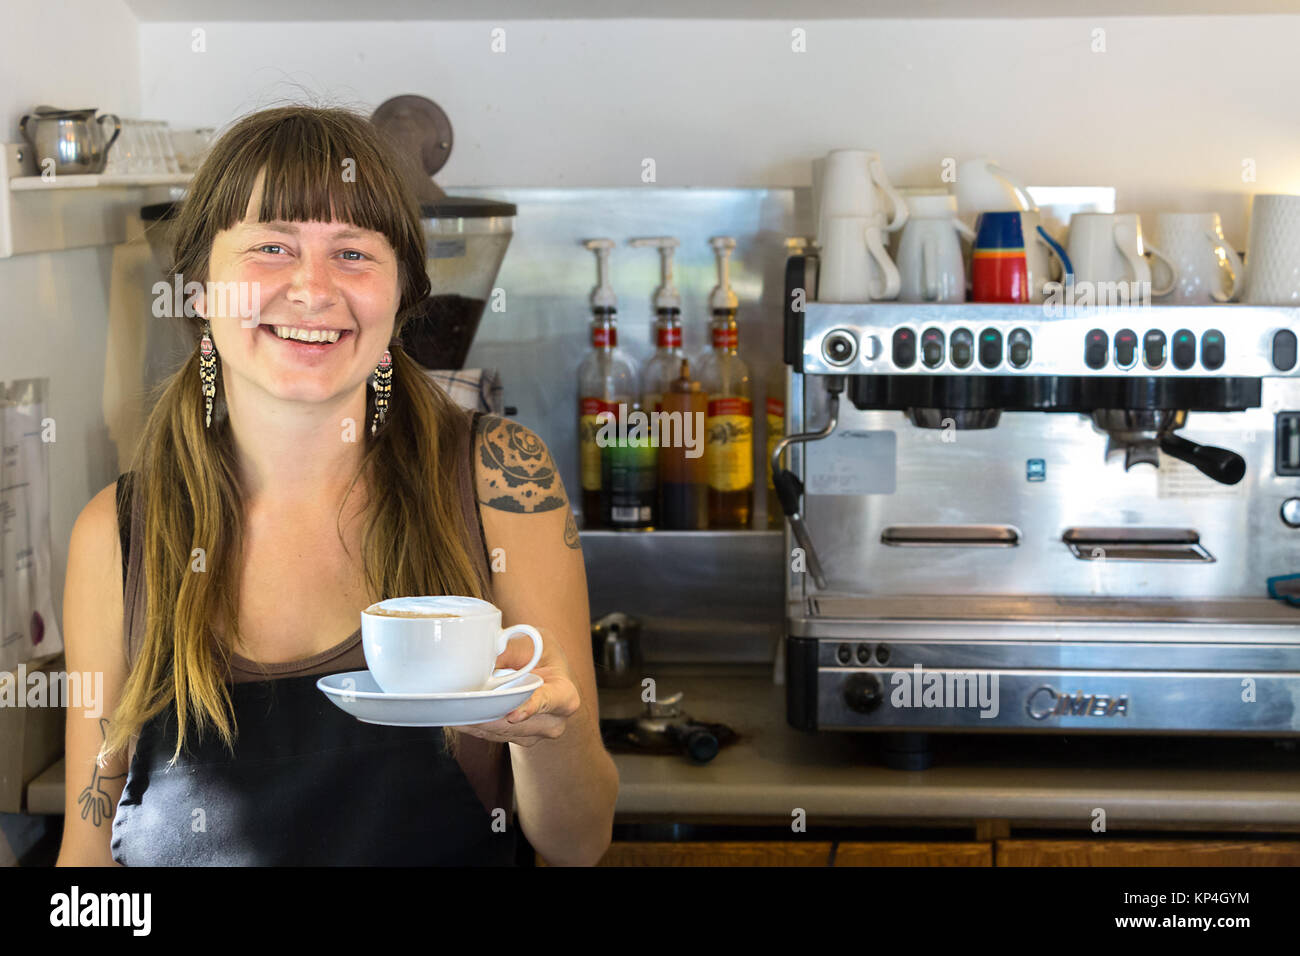 Brazo Automático Preparando Café En Cafetera Fotos, retratos